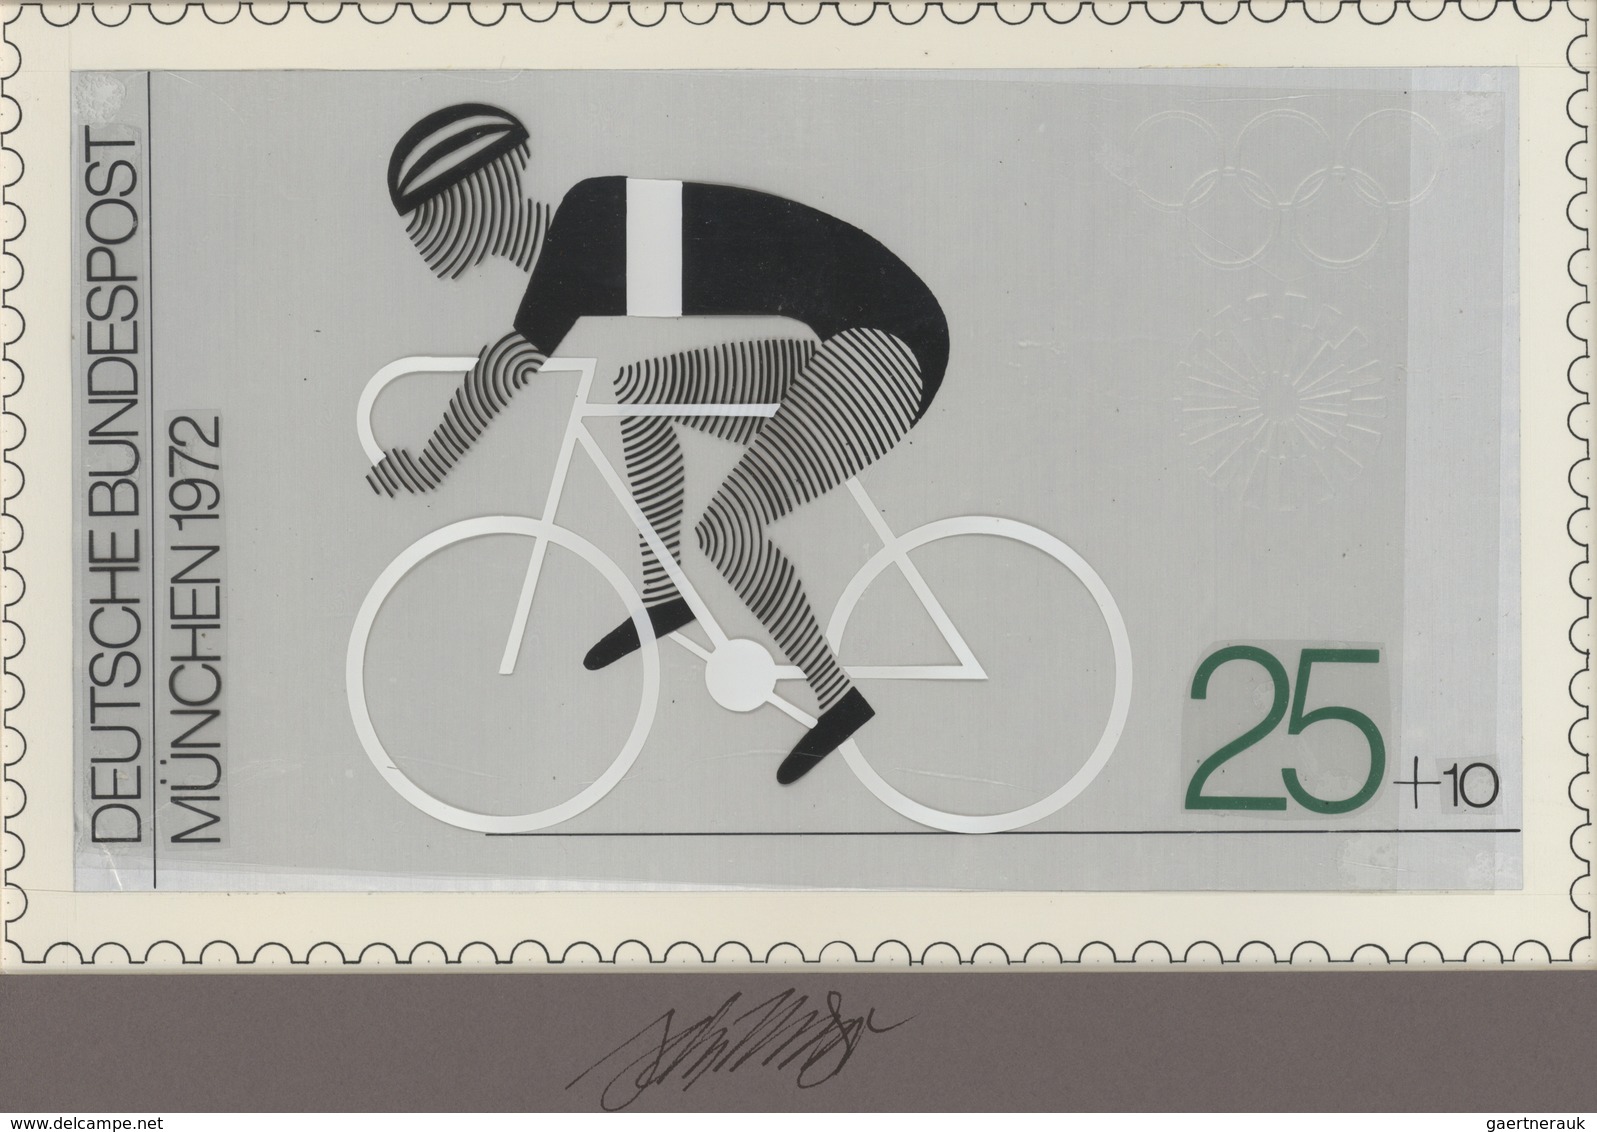 Thematik: Sport-Radsport / Sport-cycling: 1972, Bund, Nicht Angenommener Künstlerentwurf (26,5x16) V - Cycling